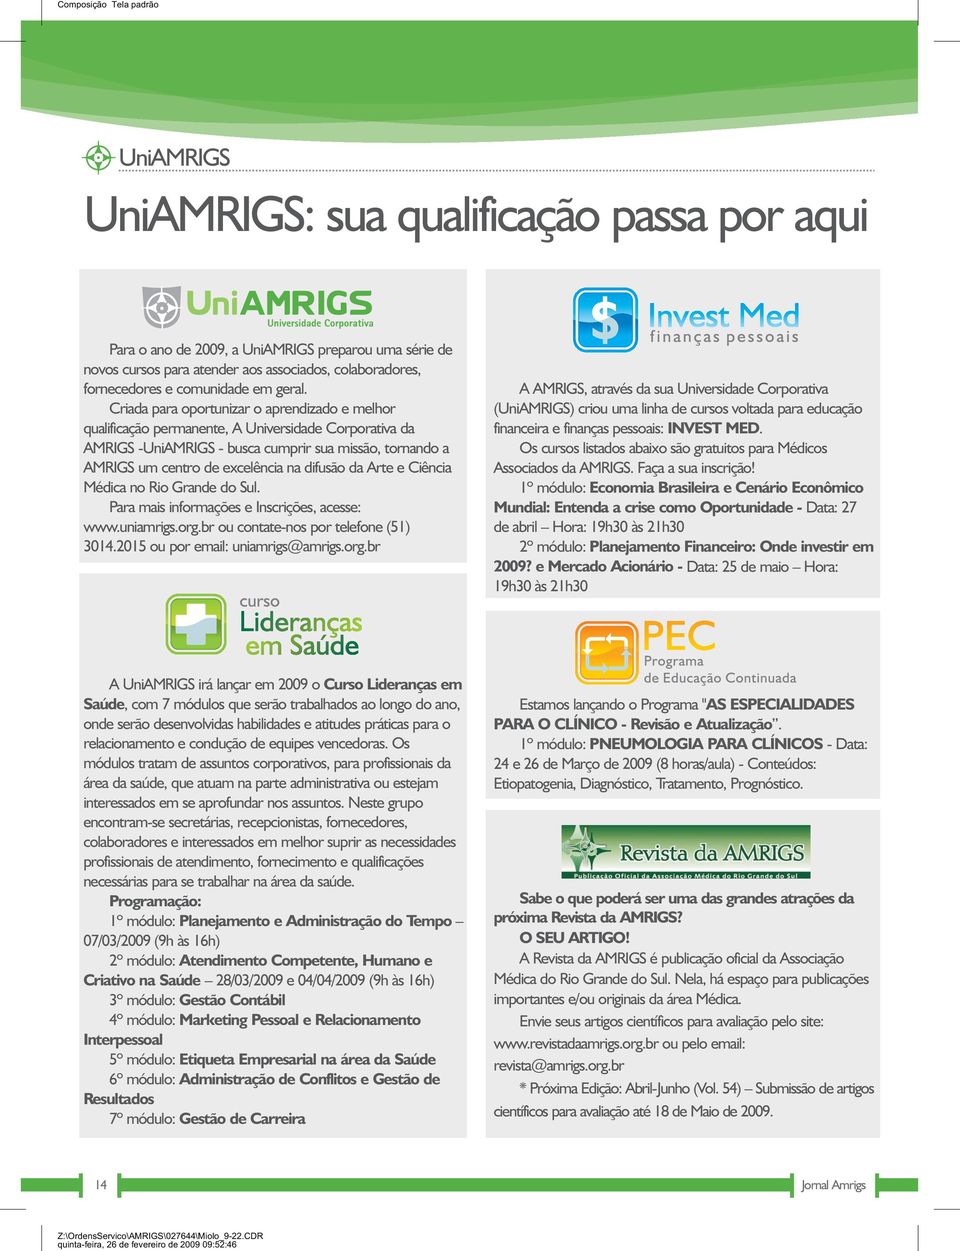 difusão da Arte e Ciência Médica no Rio Grande do Sul. Para mais informações e Inscrições, acesse: www.uniamrigs.org.